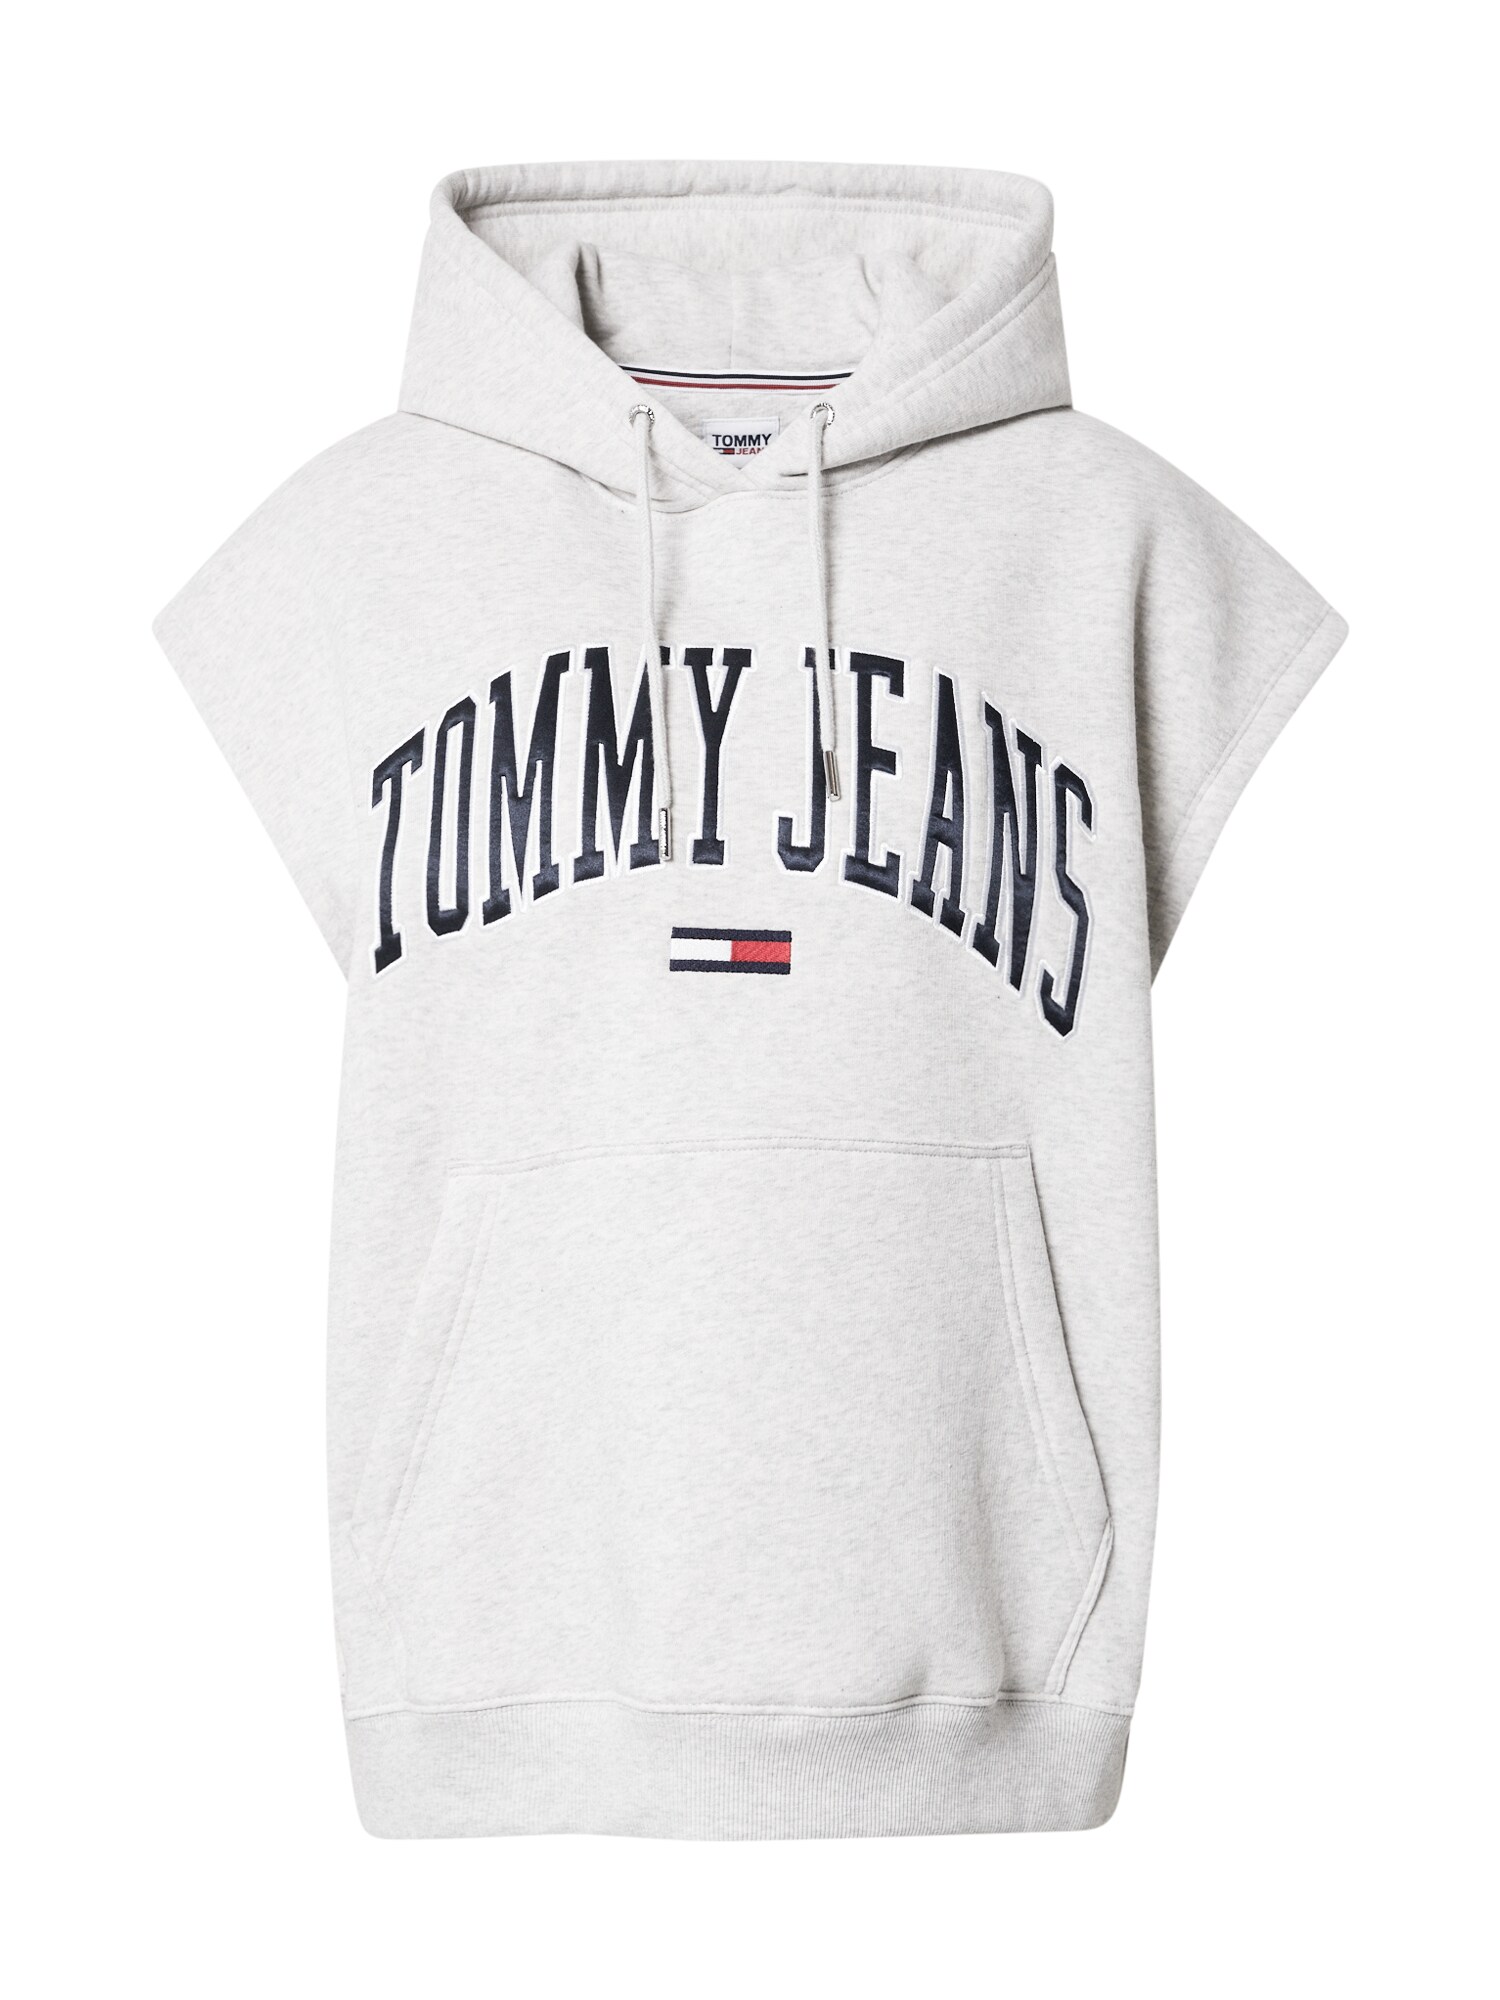 Tommy Hilfiger TOMMY HILFIGER Sweatshirt navy / graumeliert / kirschrot / weiß